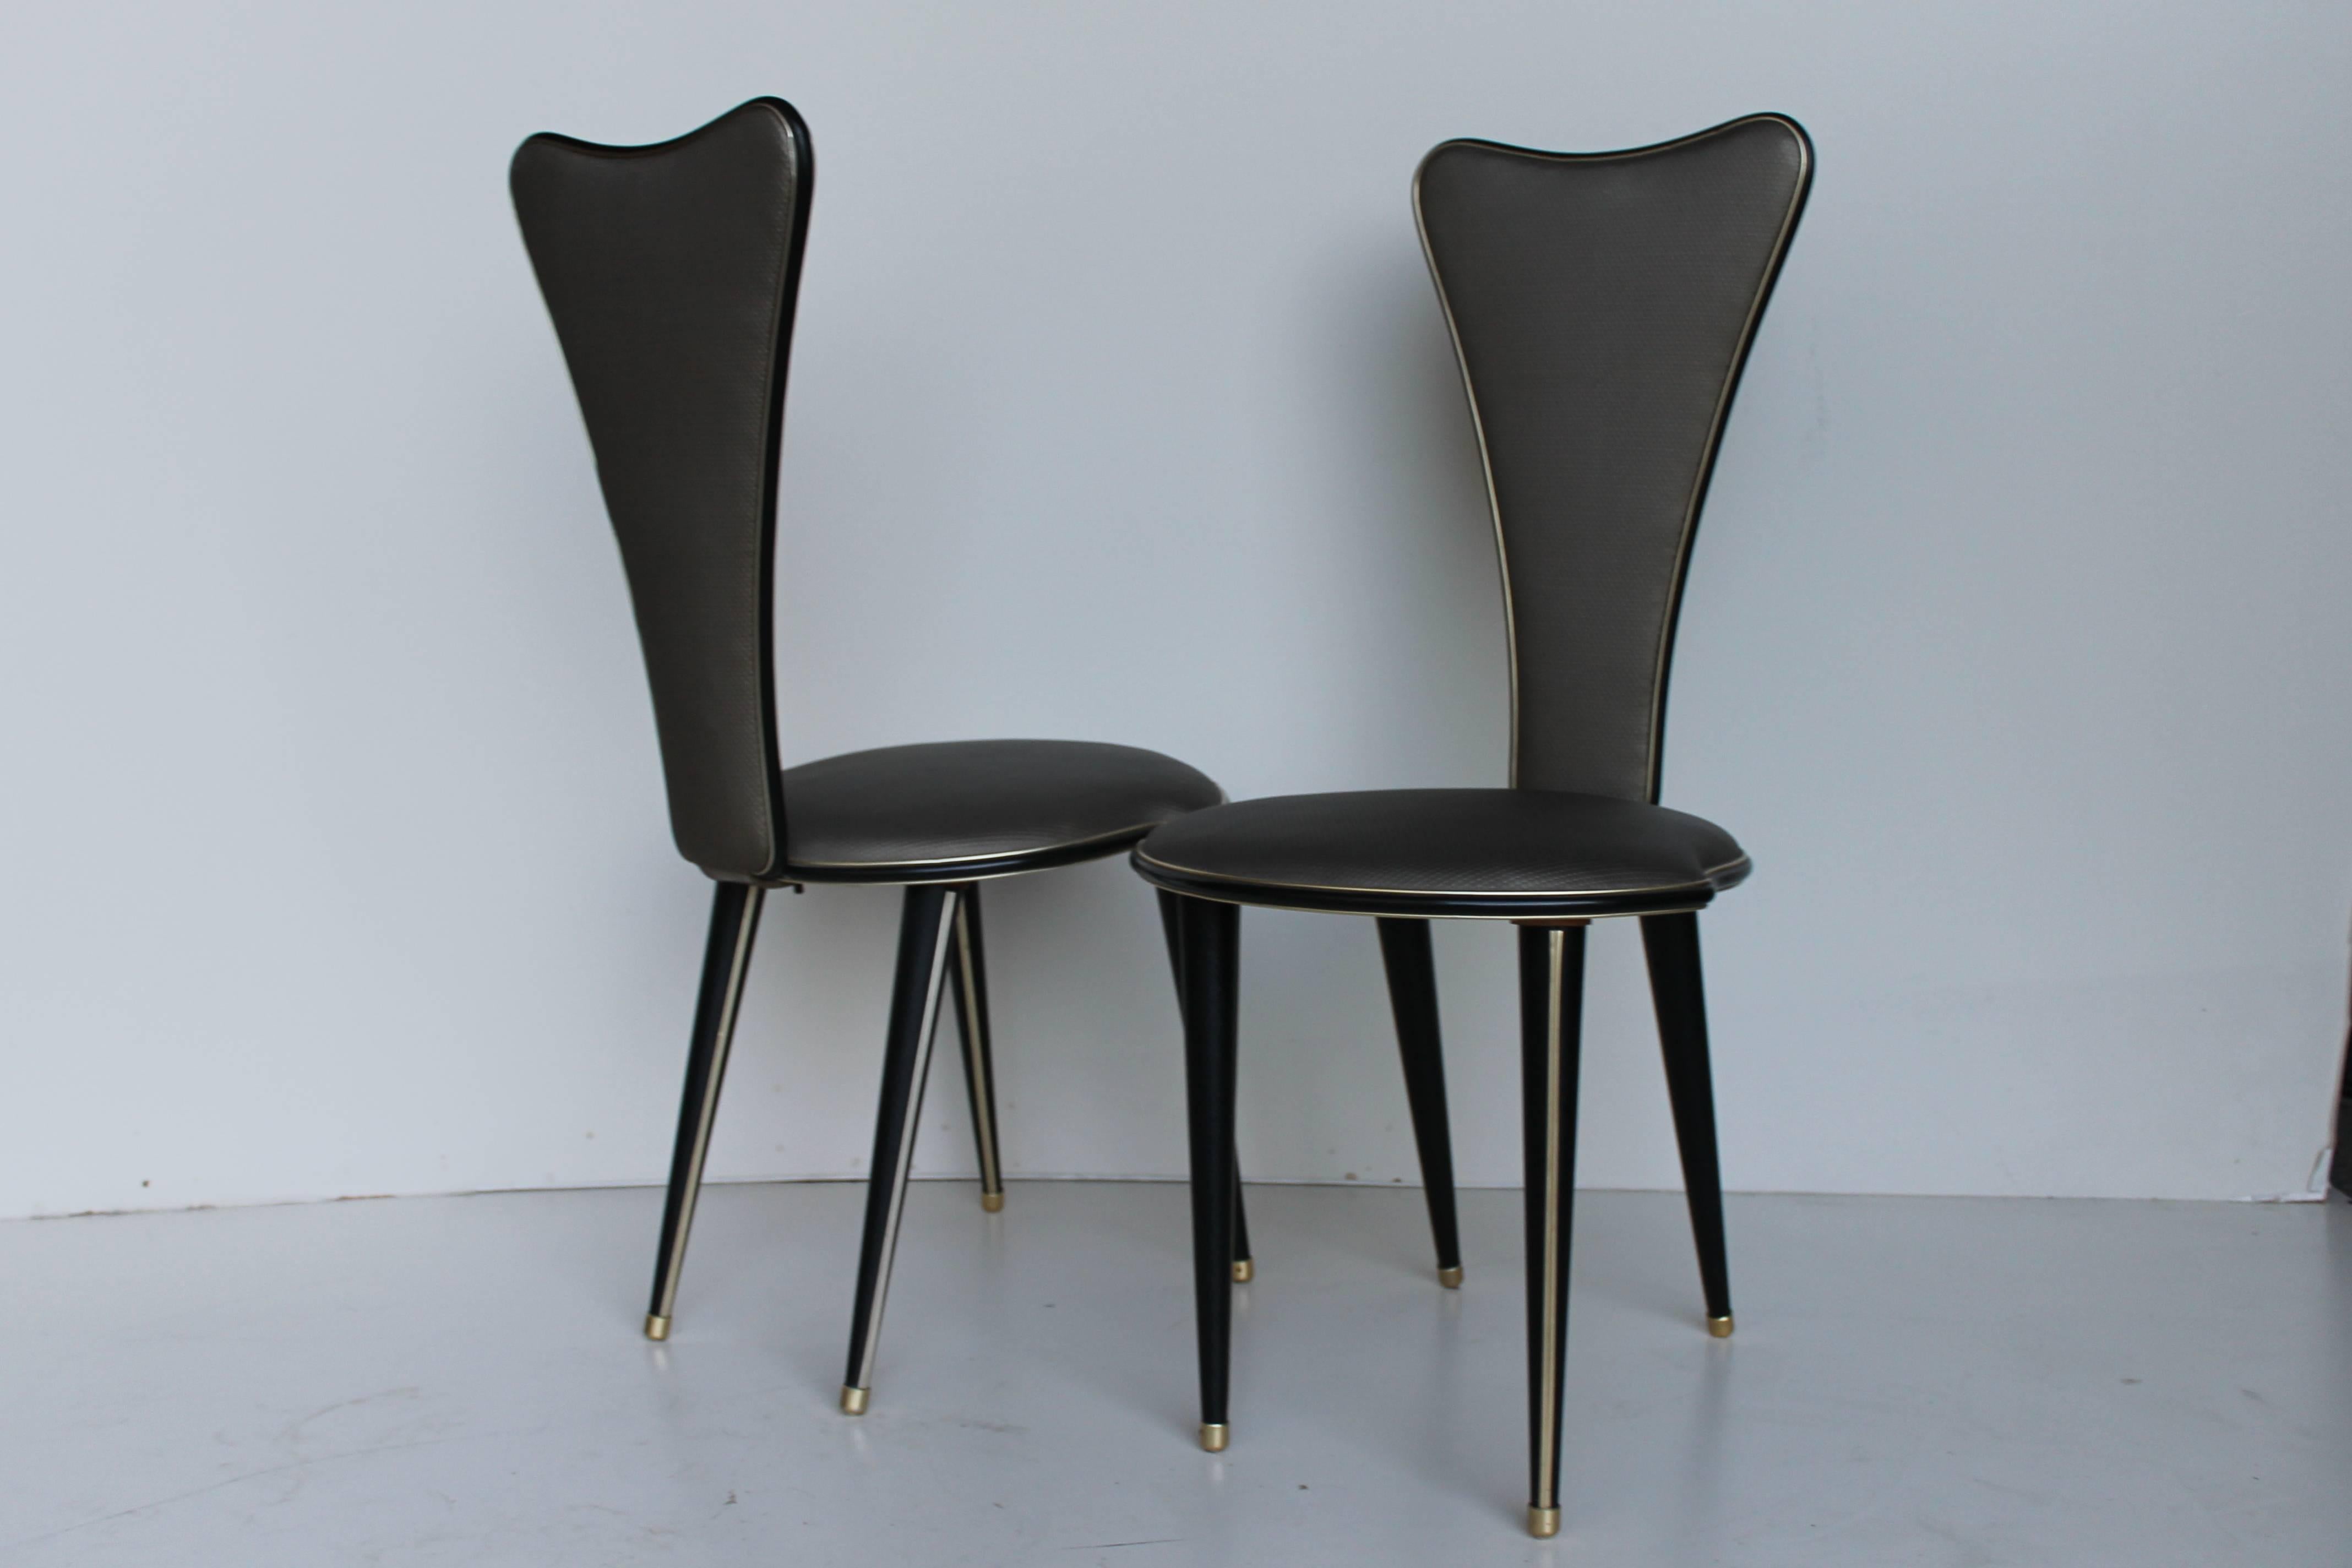 Ein Satz von vier schönen Stühlen, entworfen von Umberto Mascagni für Harrods.

Ein weiterer Satz von vier Stühlen (unterer Sitz) ist verfügbar.